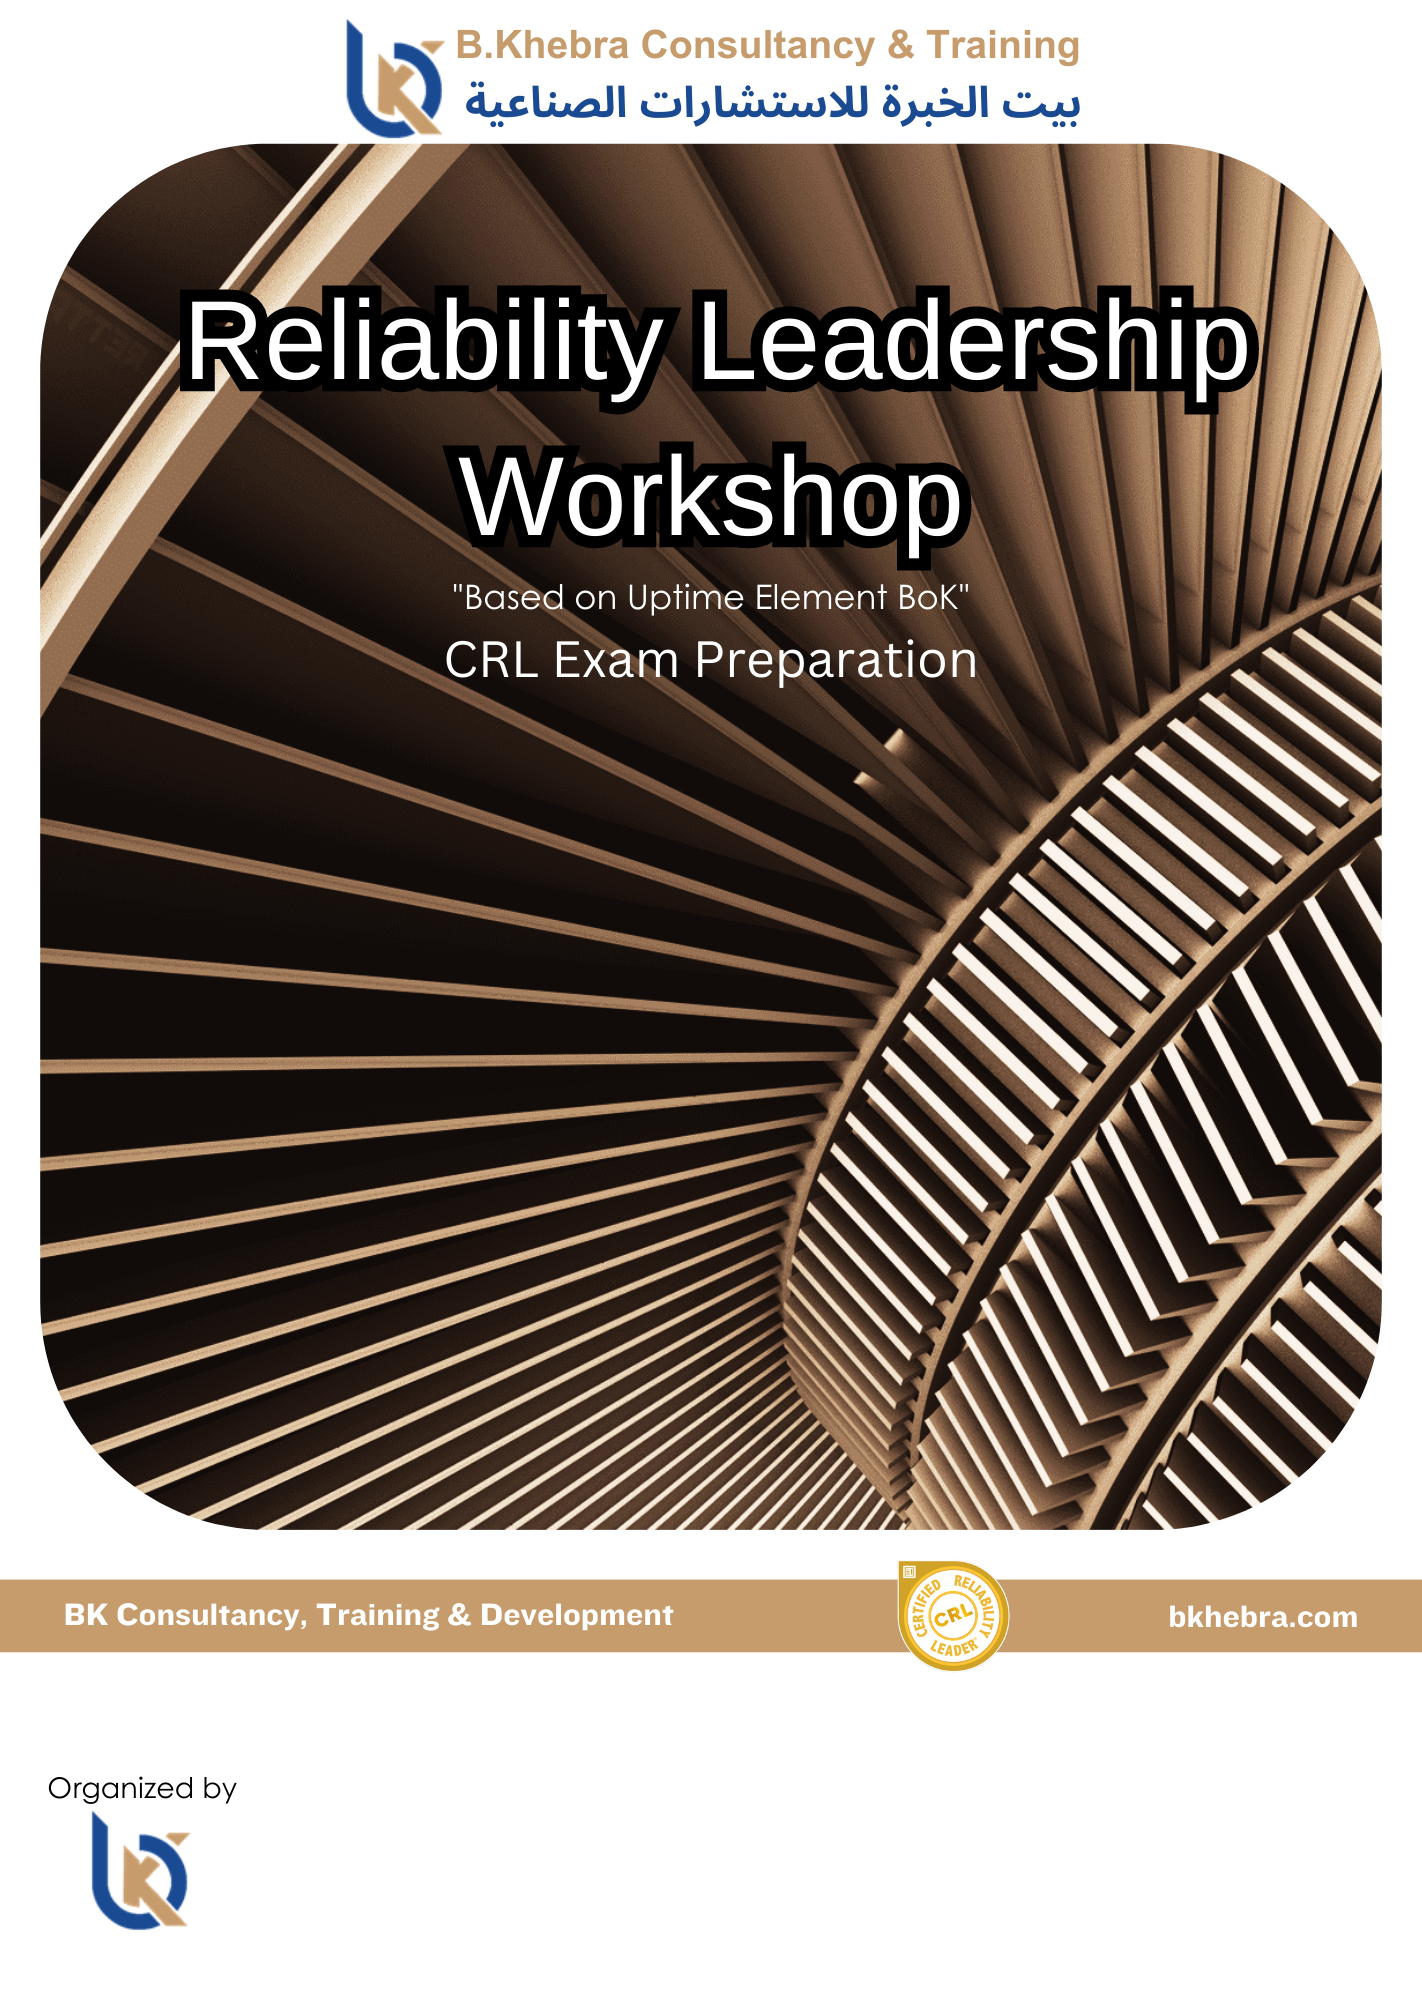 Reliability Leader Workshop "CRL"